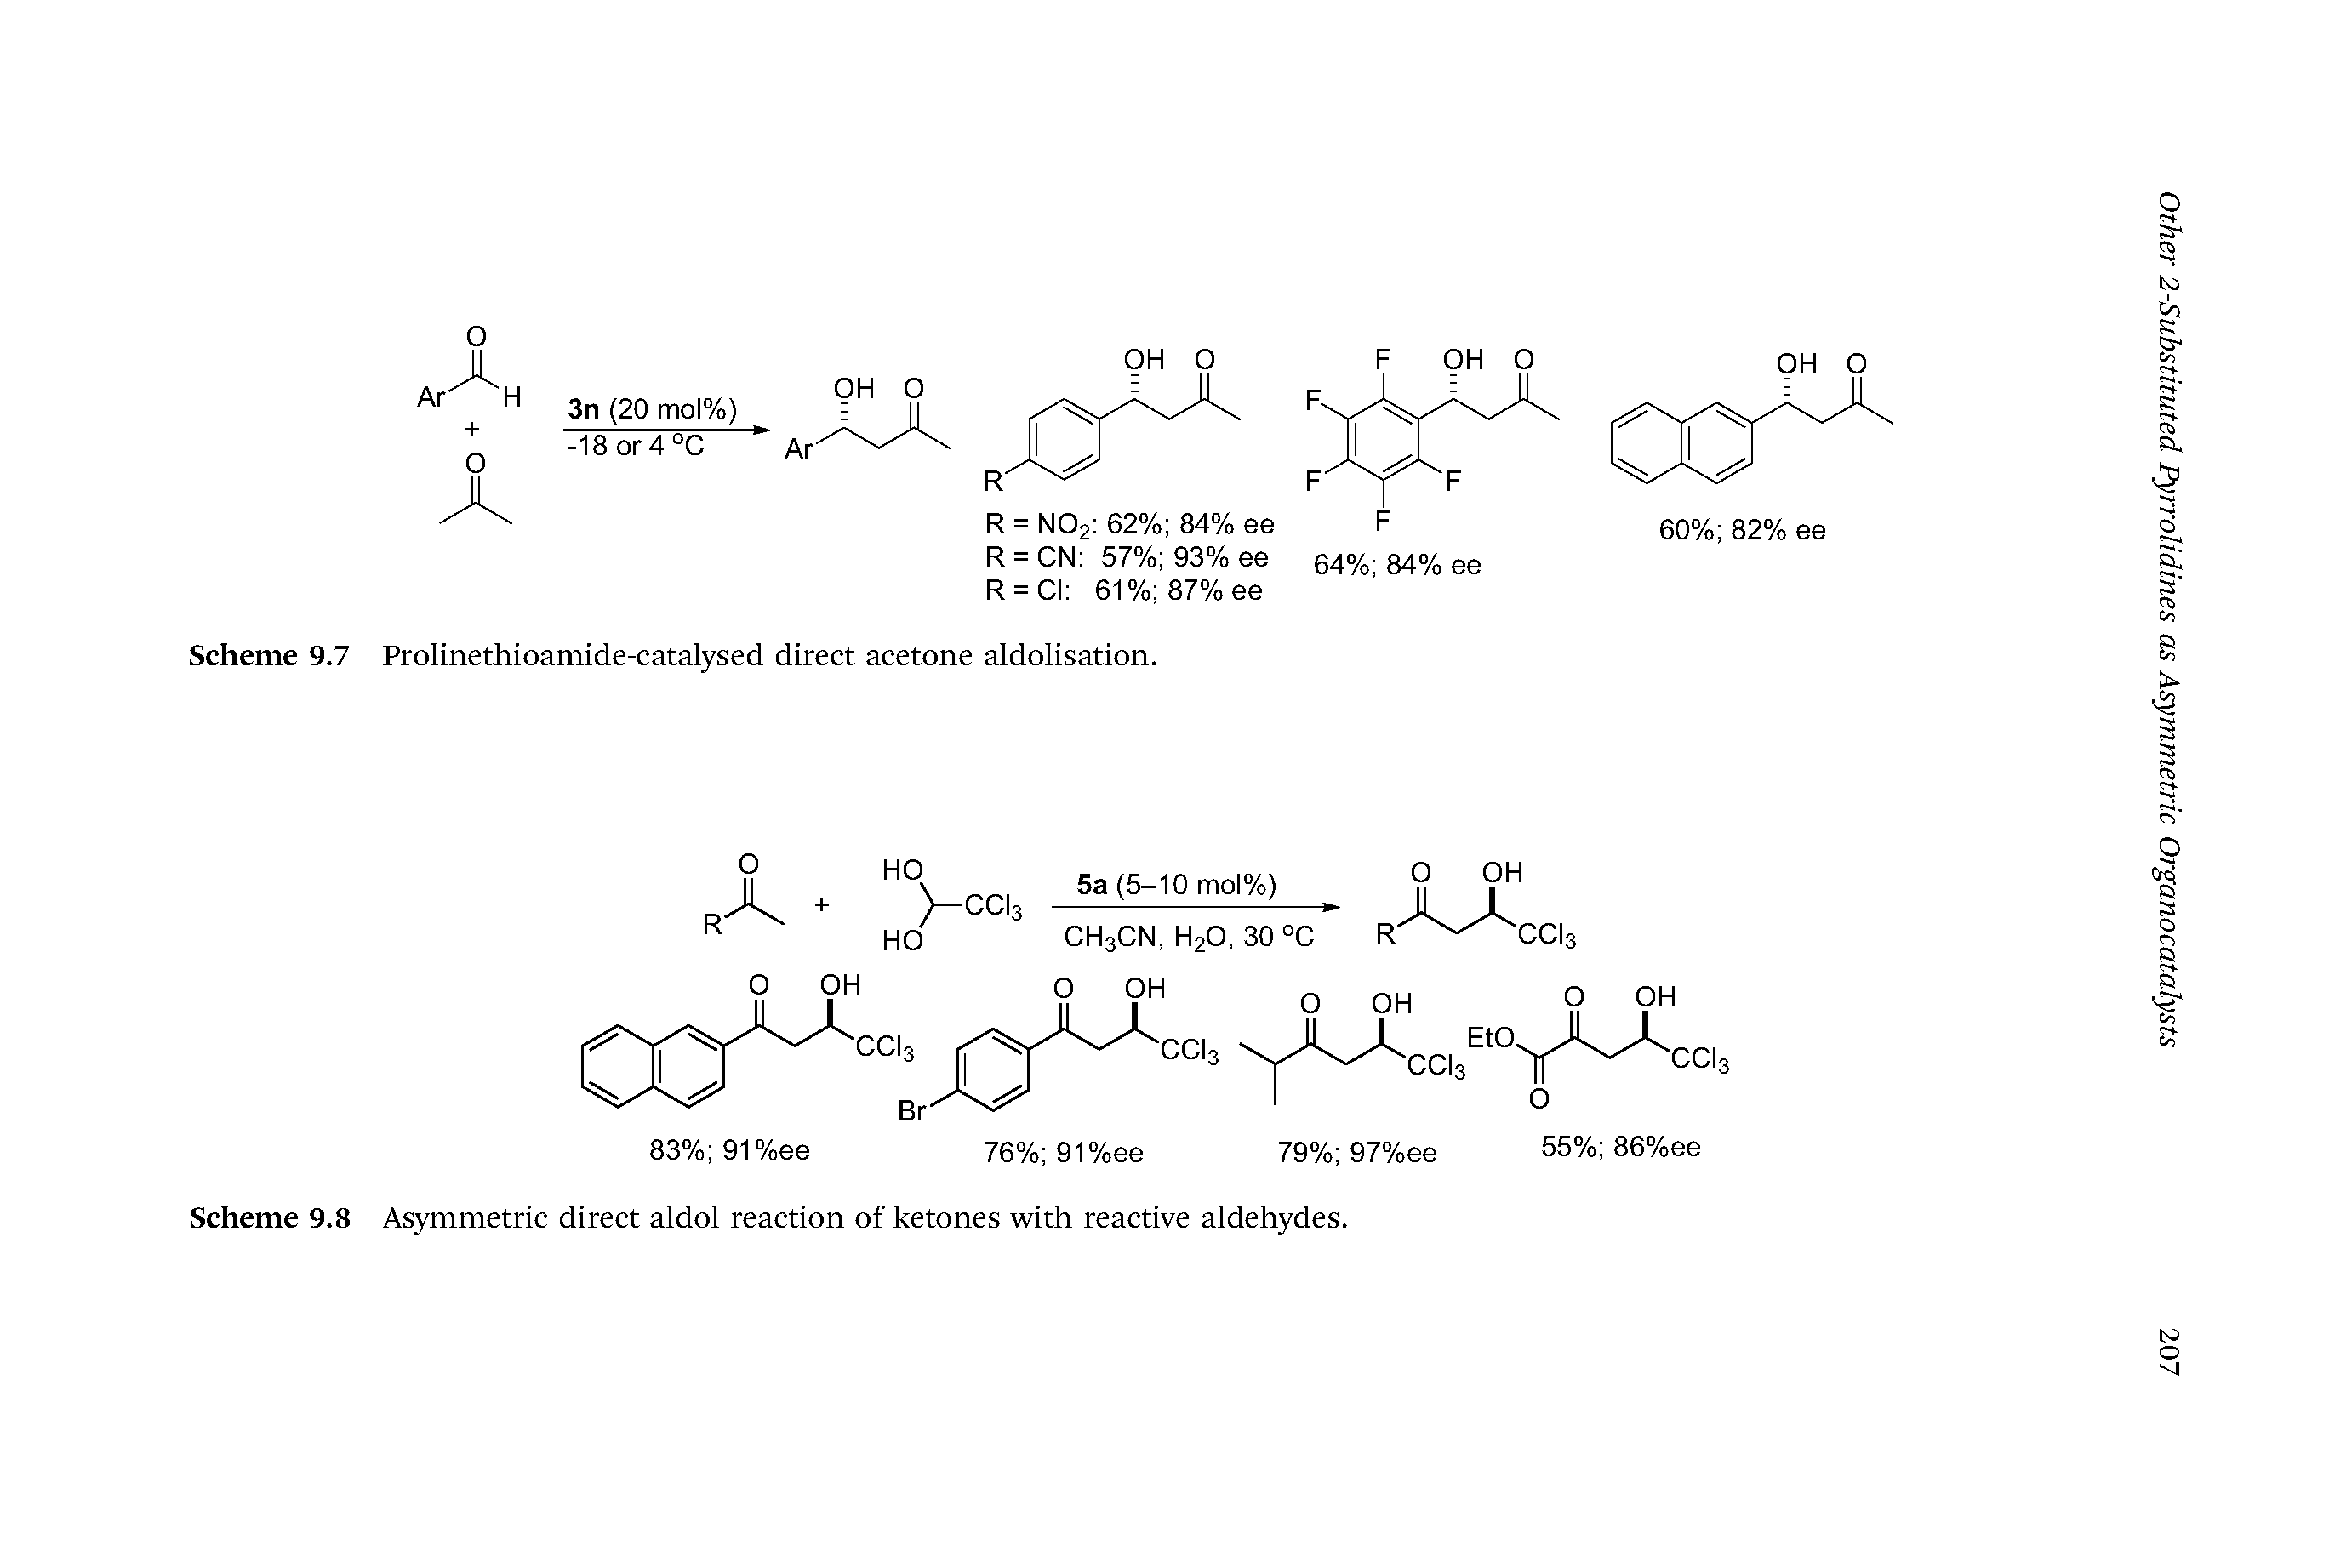 Scheme 9.8 Asymmetric direct aldol reaction of ketones with reactive aldehydes.